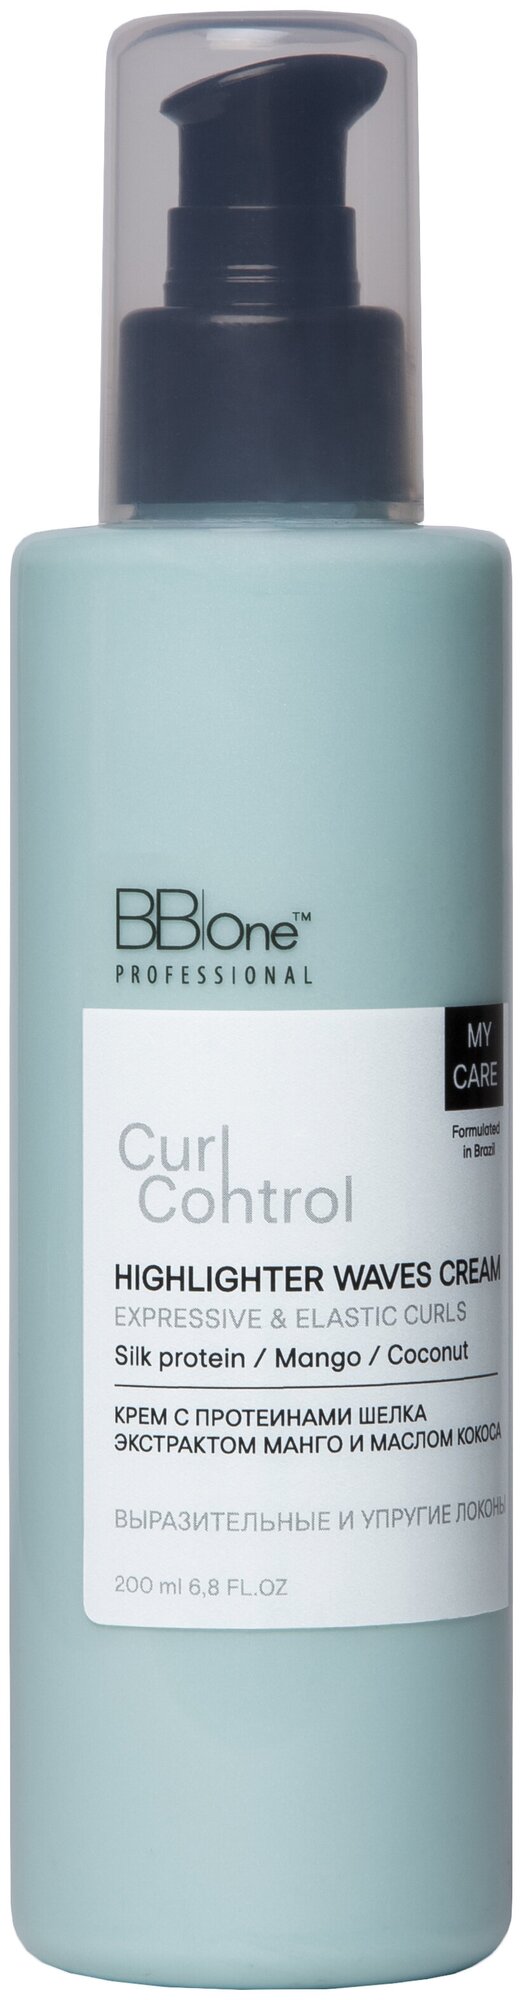 Крем-хайлайтер для волос Curl Control Highlighter Waves Cream Expressive & Elastic Curls